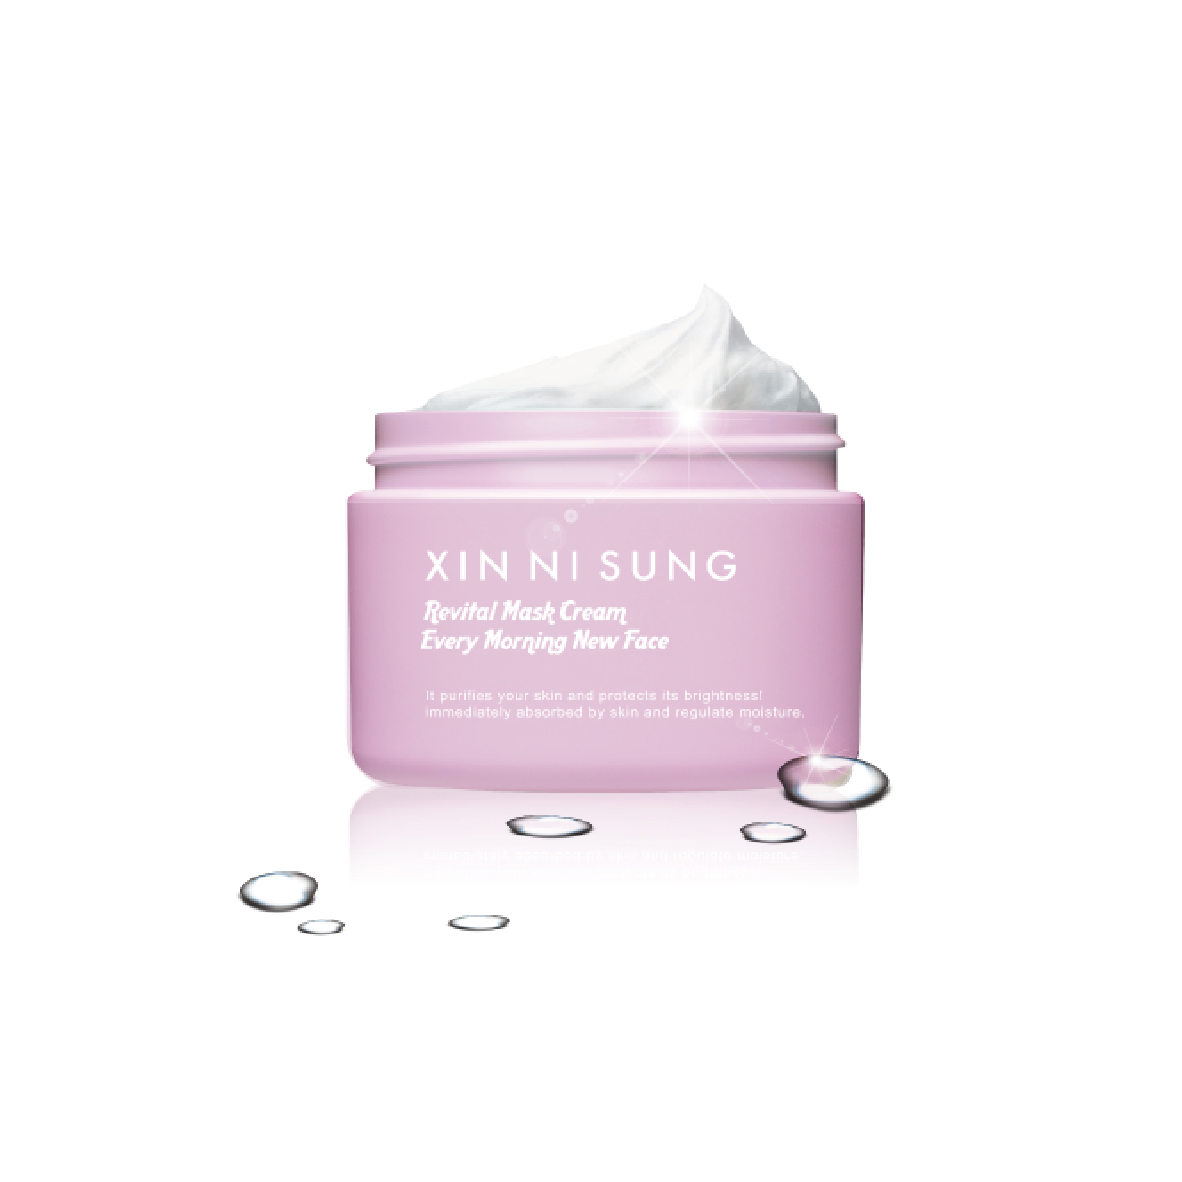 XIN NI SUNG Crystal Revital Mask Cream 焕柔雪肌嫩颜膜 100g